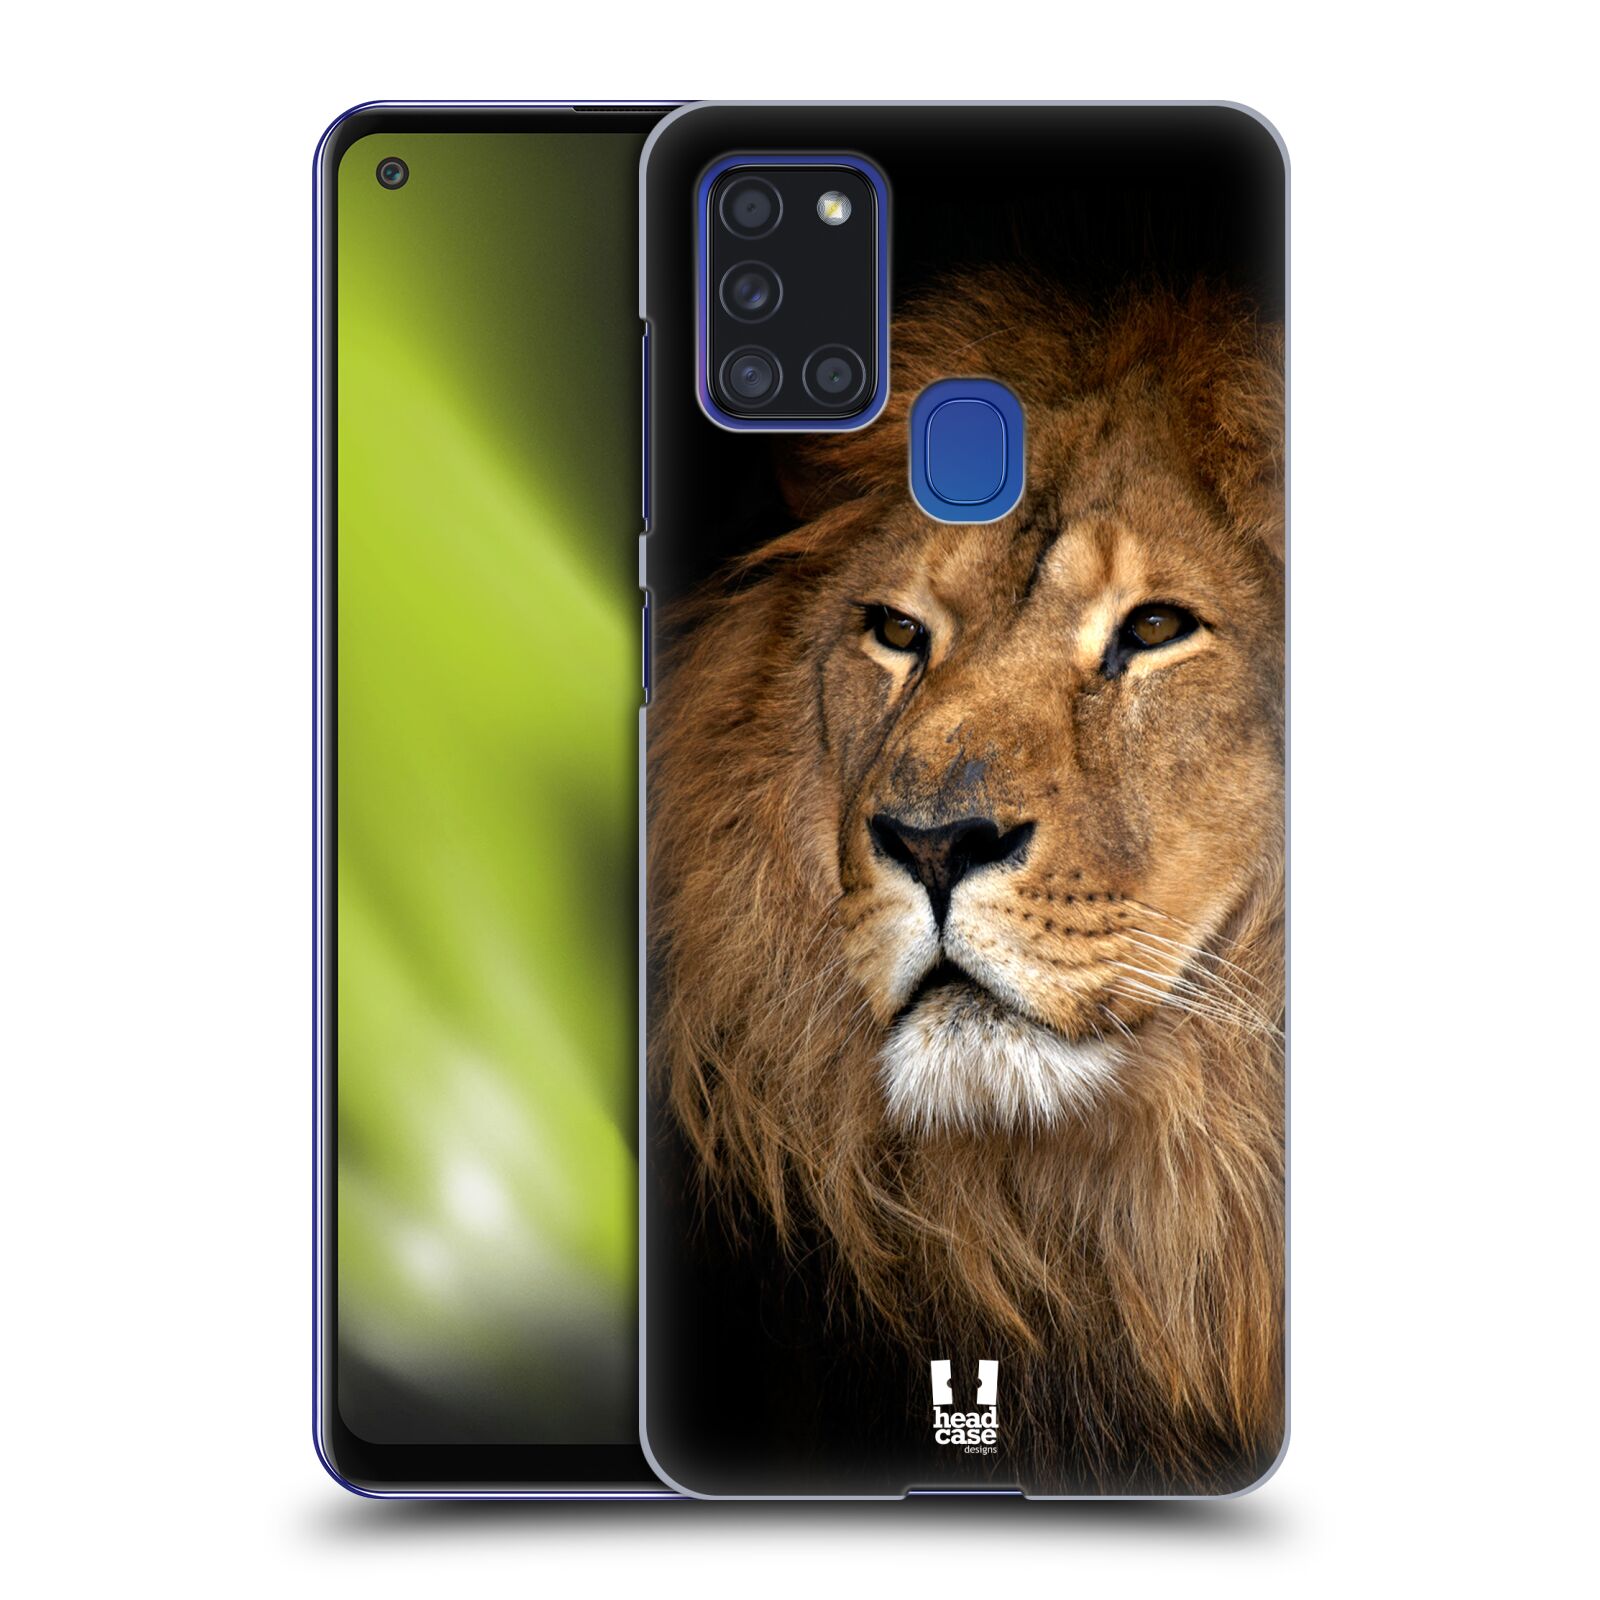 Zadní obal pro mobil Samsung Galaxy A21s - HEAD CASE - Svět zvířat král zvířat Lev